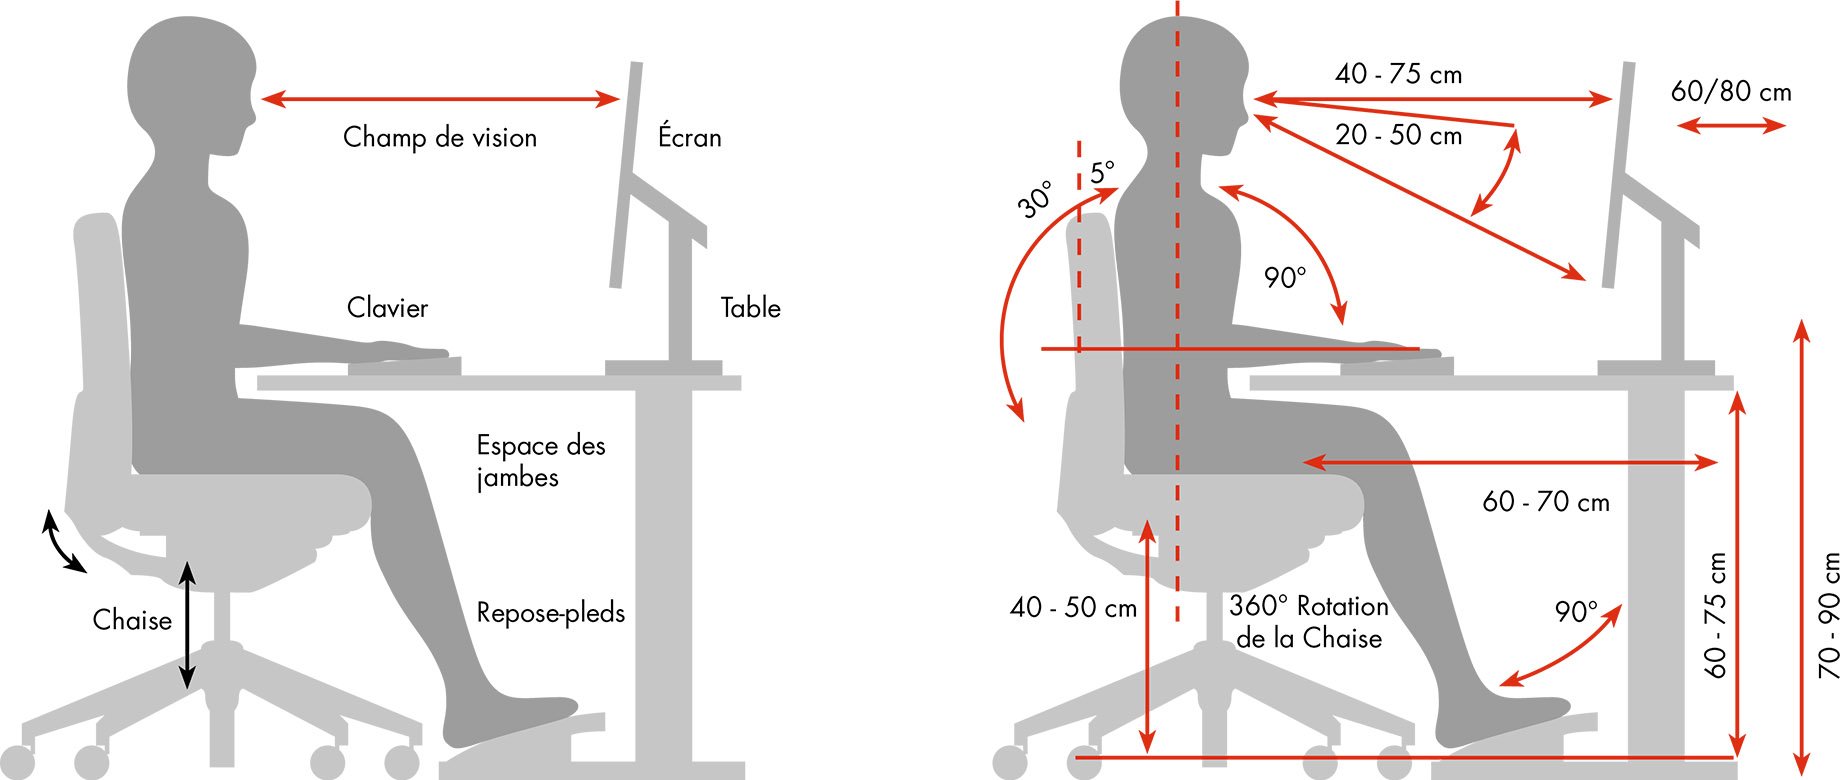 Nos conseils pour bien évaluer l'ergonomie d'un poste de travail !